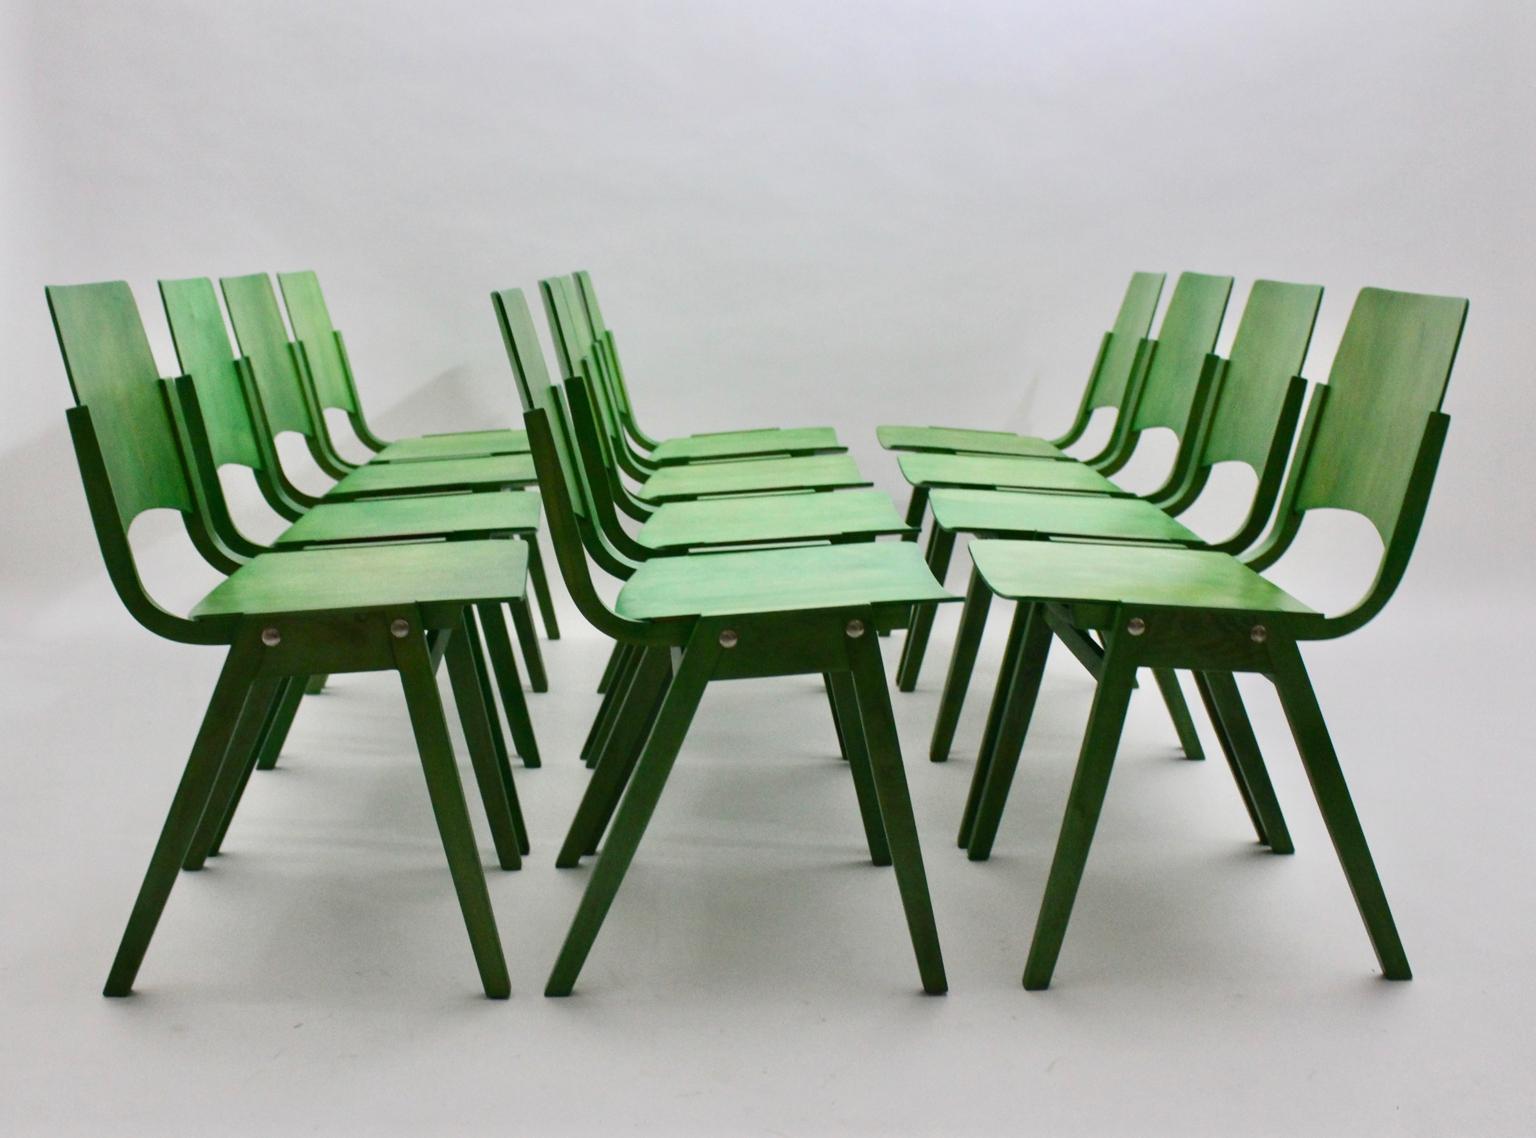 Mid Century Modern vintage Satz von 12 buchegrünen vintage Esszimmerstühlen Modell Nr. P7, die auch stapelbar sind, entworfen von Roland Rainer für die Wiener Stadthalle (Backstage-Bereich) 1952 und ausgeführt von Emil & Alfred Pollak Wien.
Diese